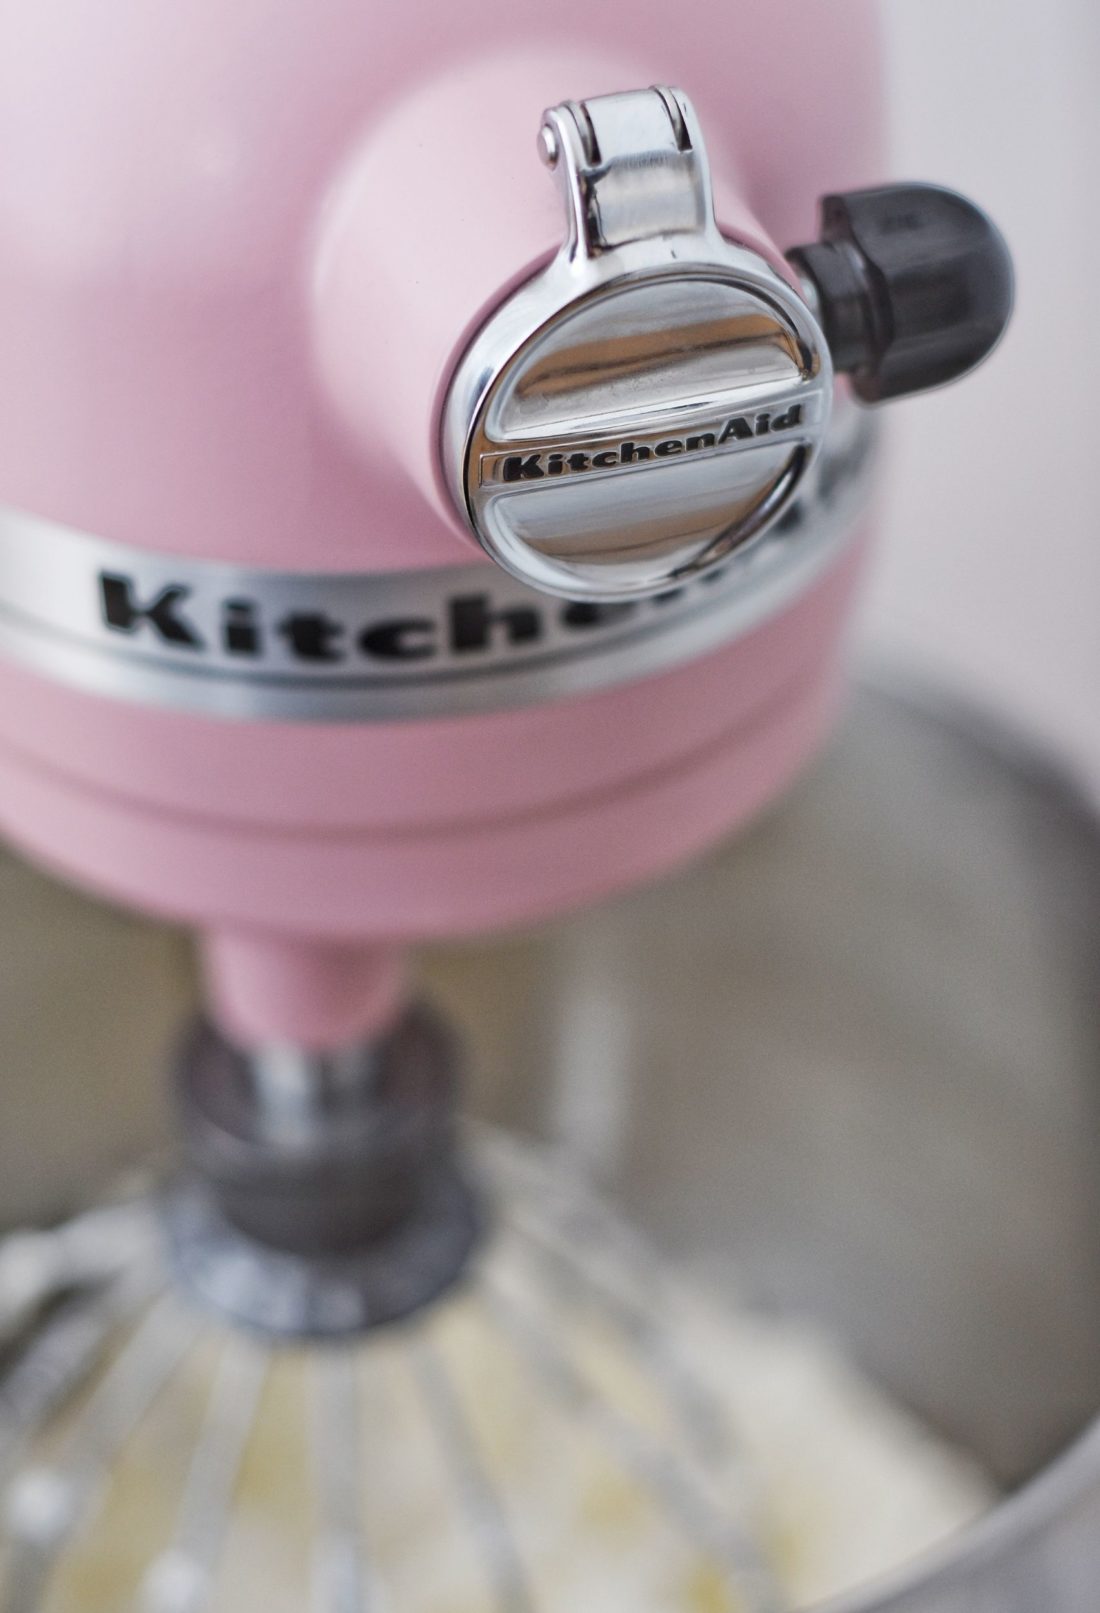 KitchenAid Mixer Giveaway UpClose